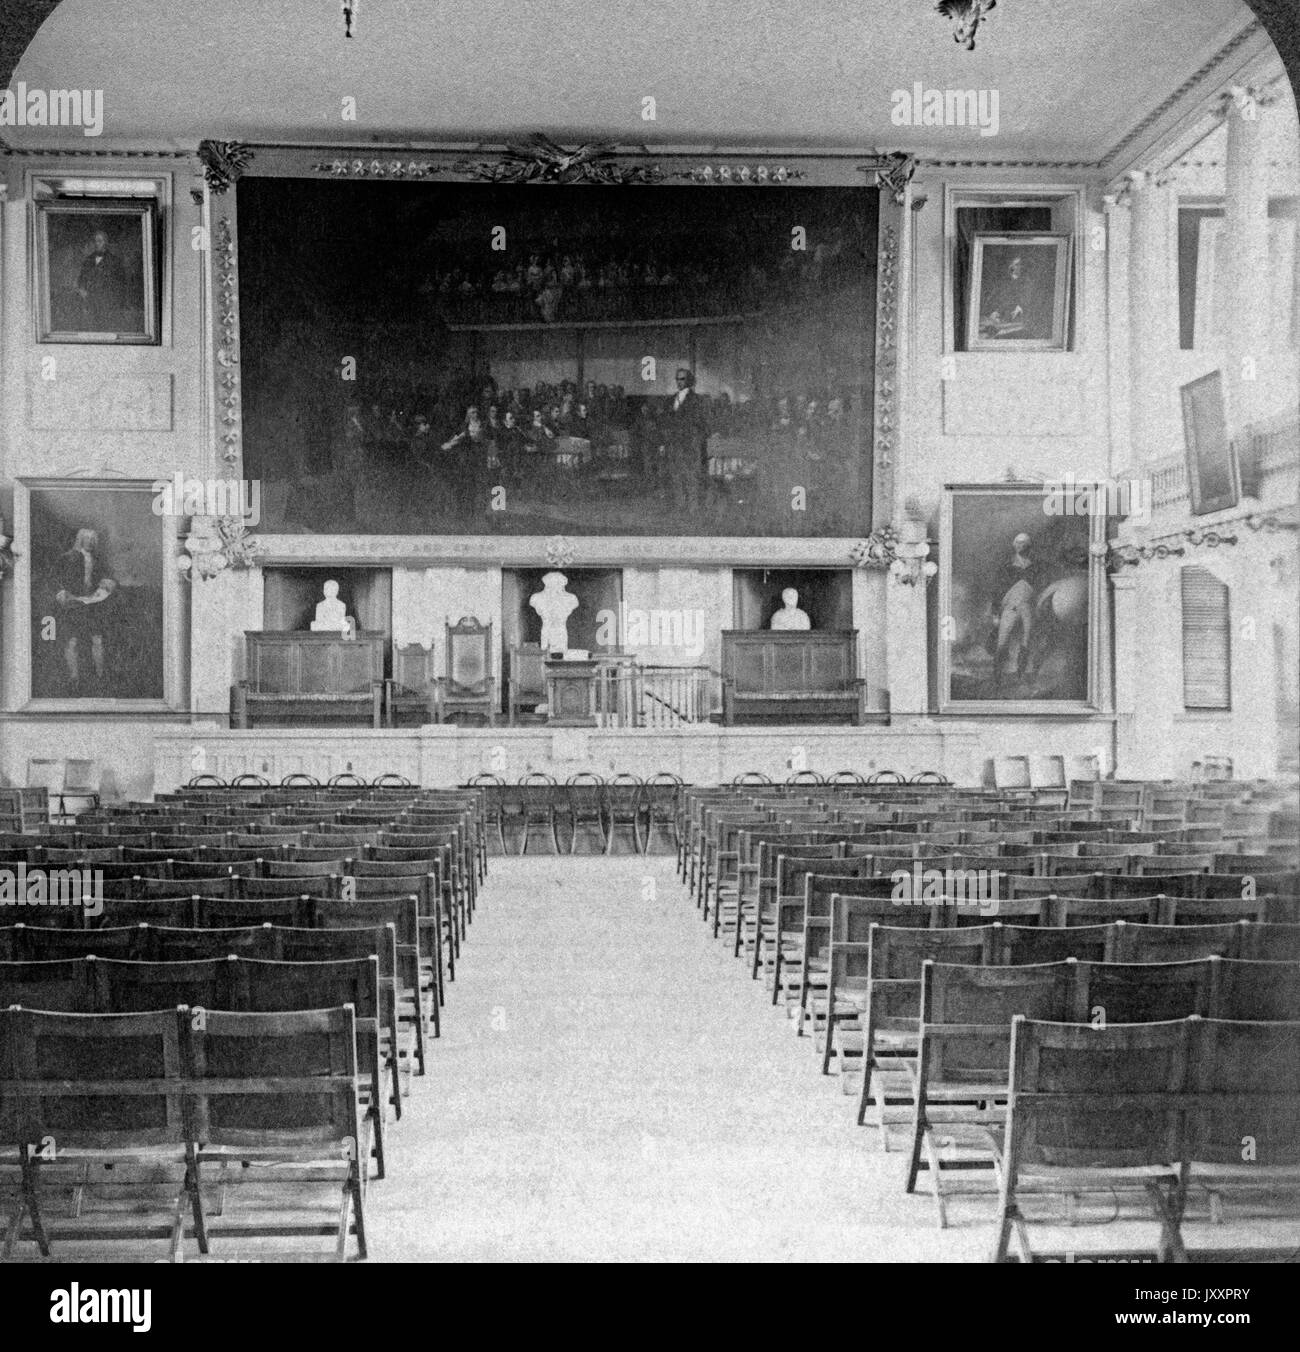 Die Wiege der Freiheit - Innenraum von Faneuil Hall in Boston, Massachusetts, USA 1908. Die Wiege der Freiheit - Innenraum der Faneuil Hall, Boston, Mass., Szene epochaler Sitzungen von zwei Jahrhunderten, USA 1908. Stockfoto